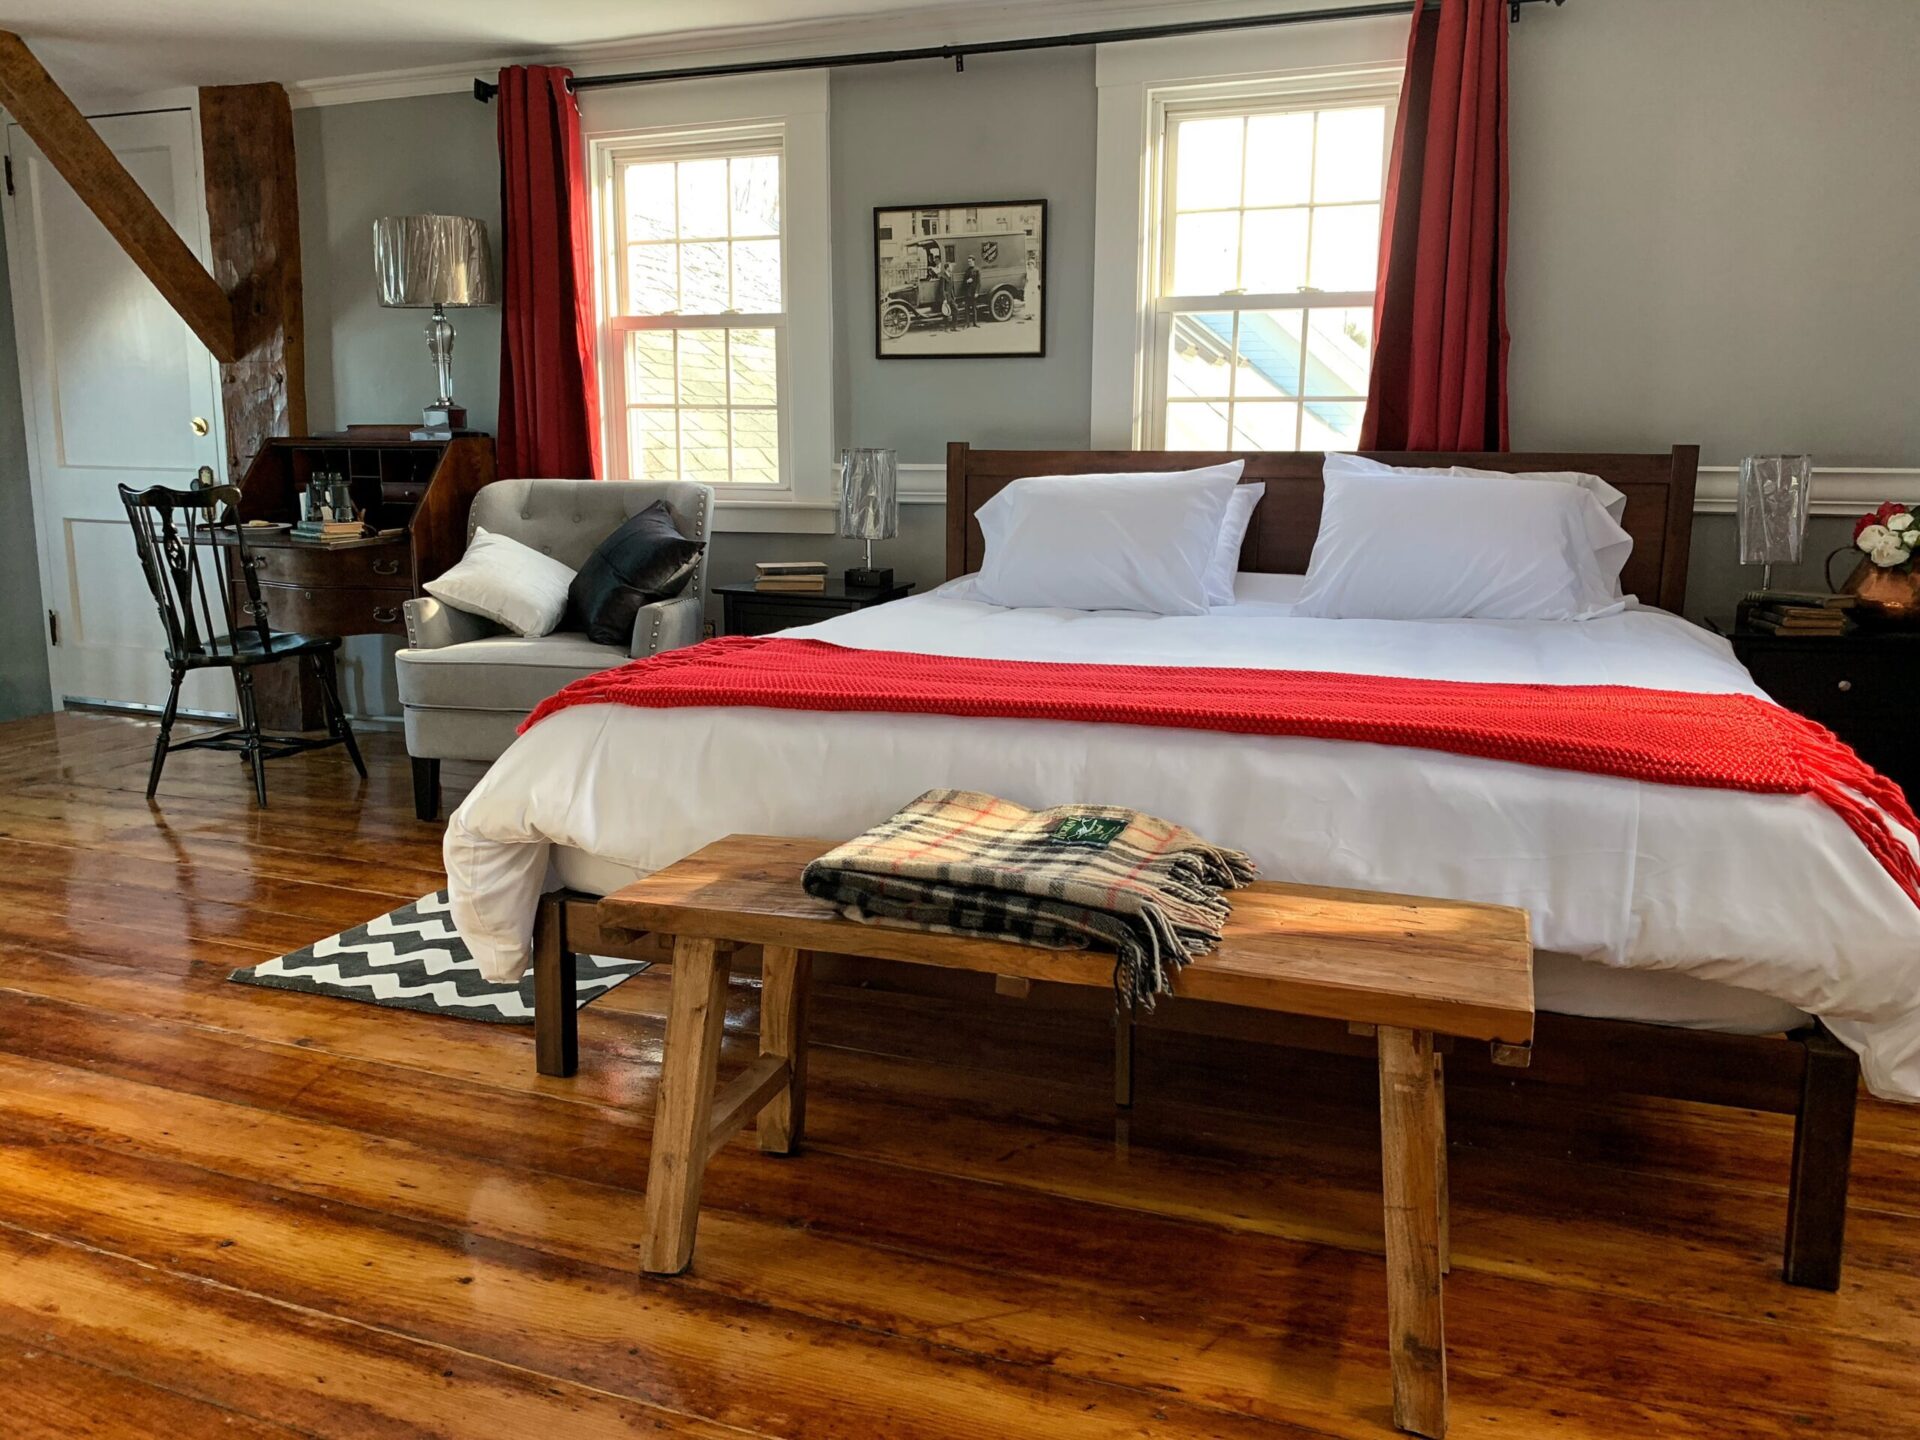 Top of the Ridge Farm Bed & Breakfast est une maison d'hôtes gay friendly à New Durham dans le New Hampshire aux États-Unis